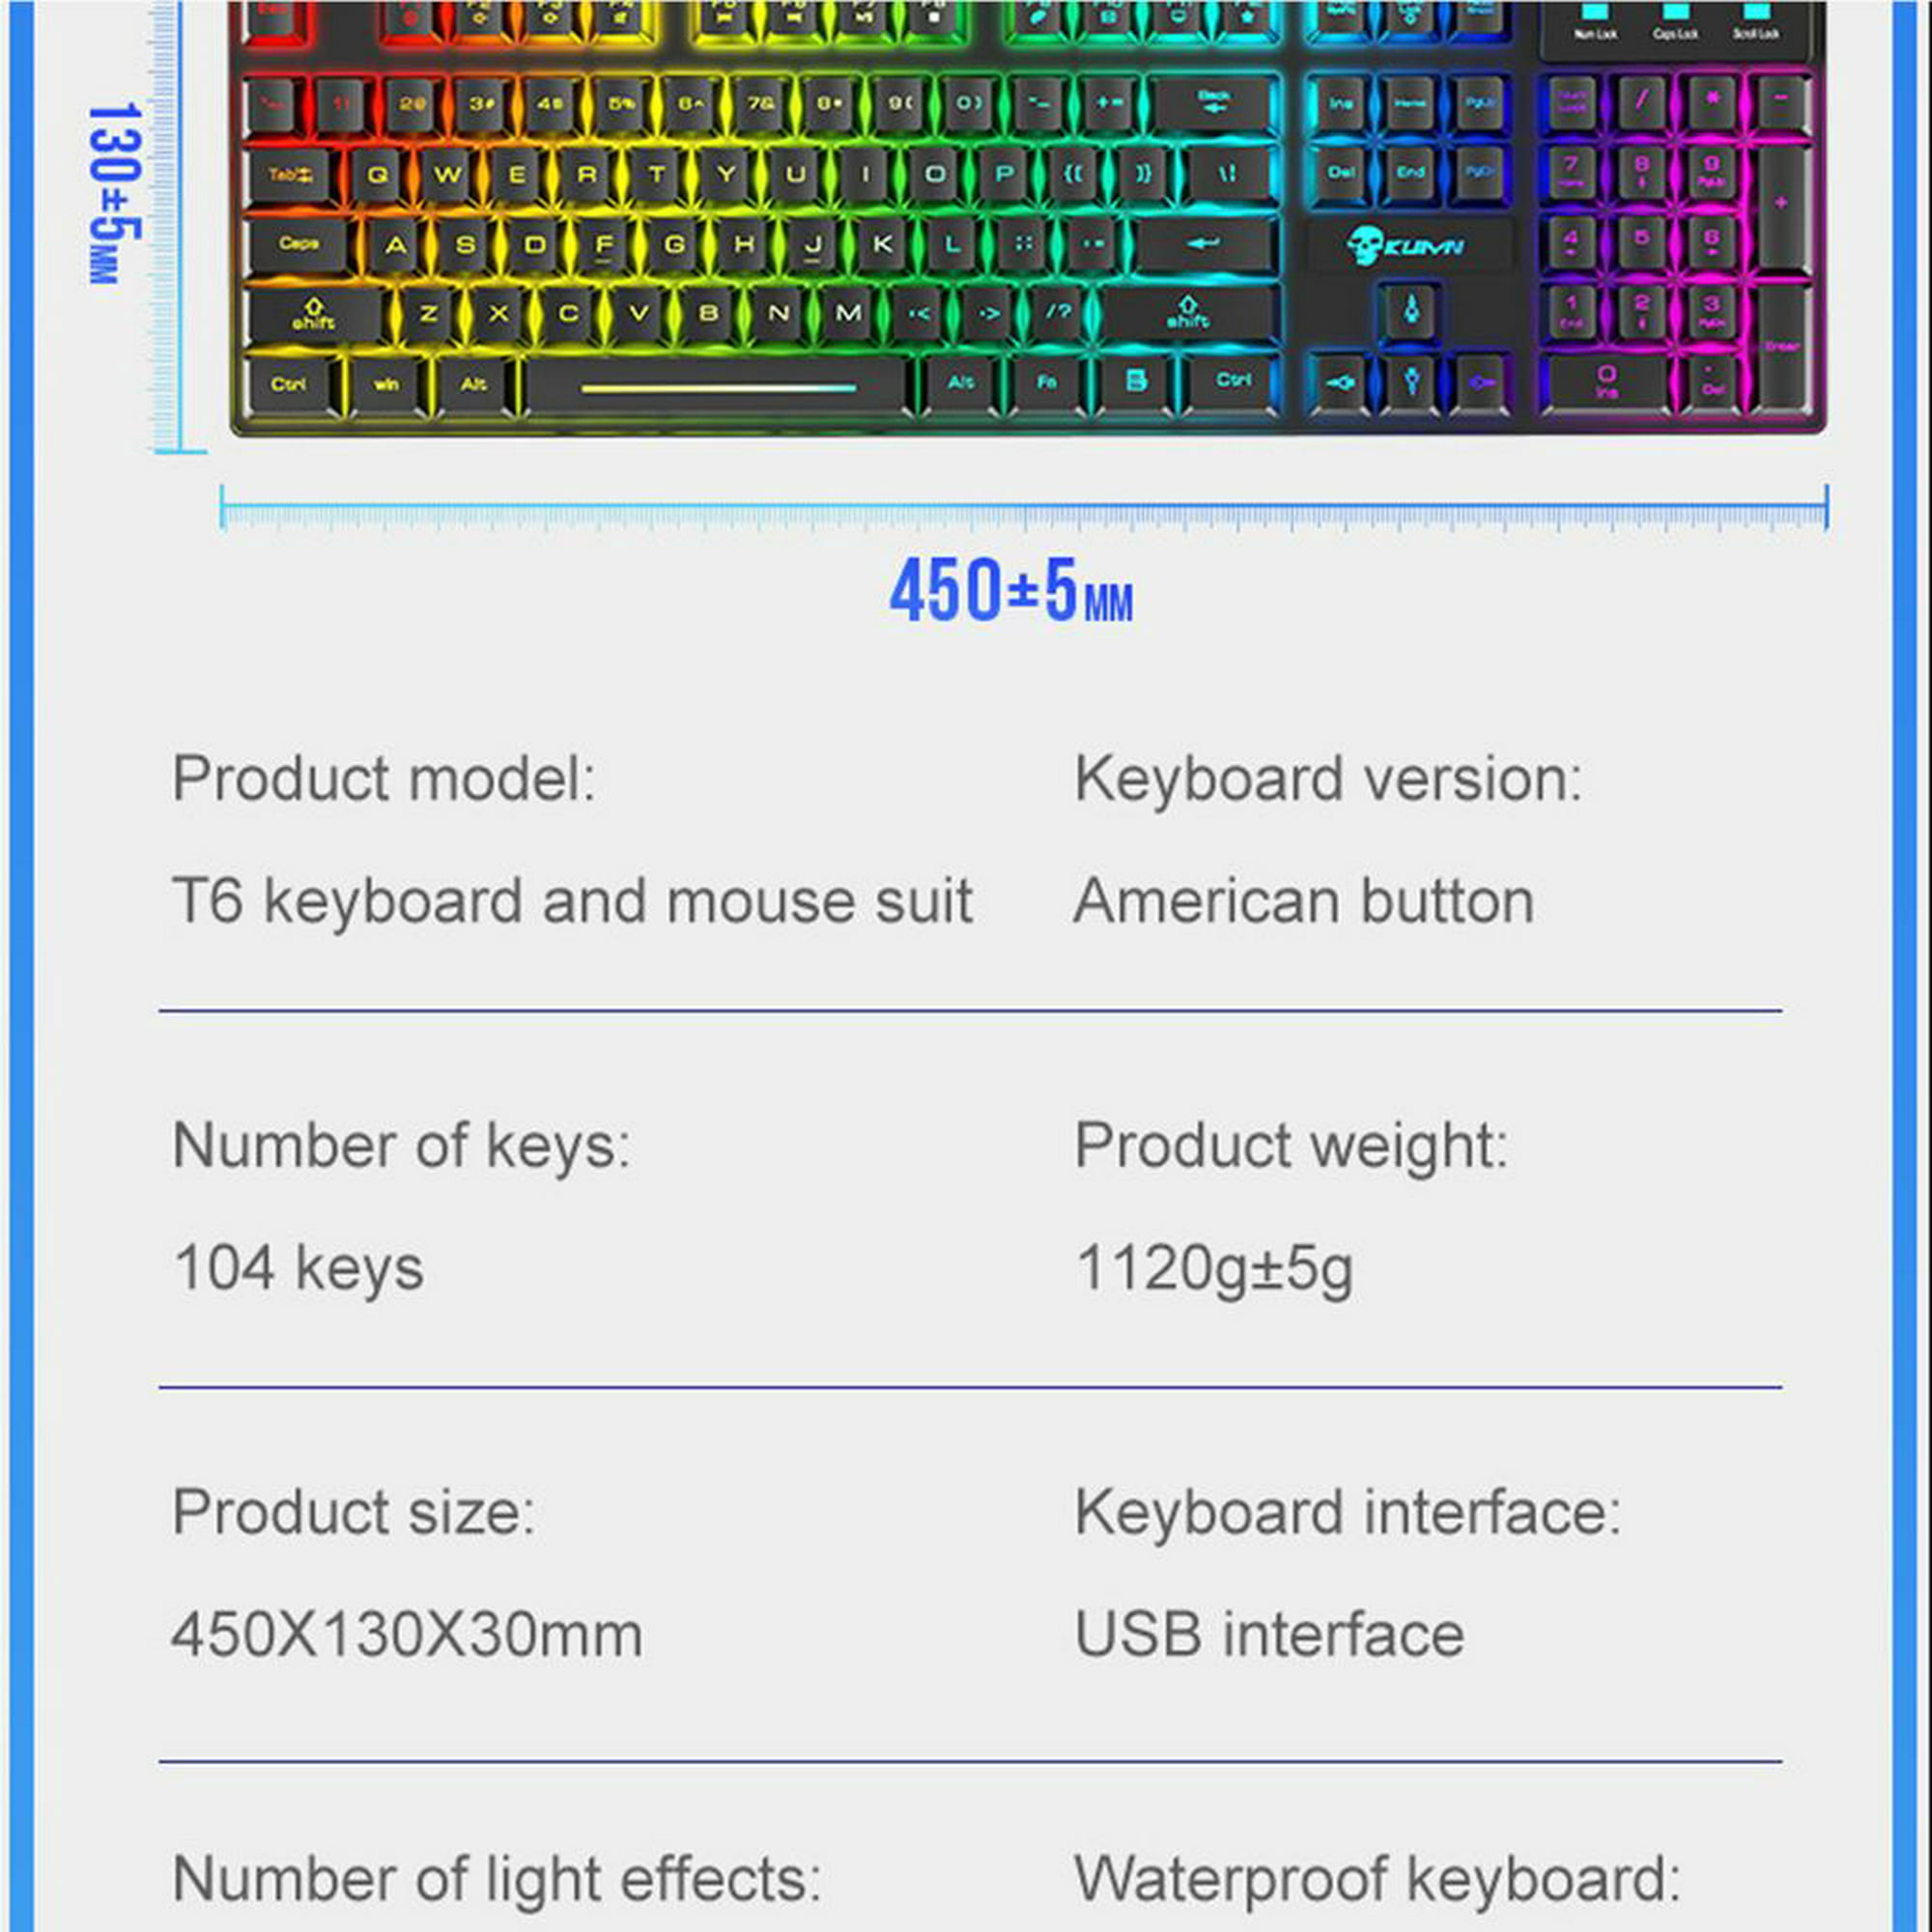 Kit combinado de accesorios para juegos RGB para PC, teclado para juegos y  mouse para juegos, teclado USB a prueba de derrames, mouse óptico con cable